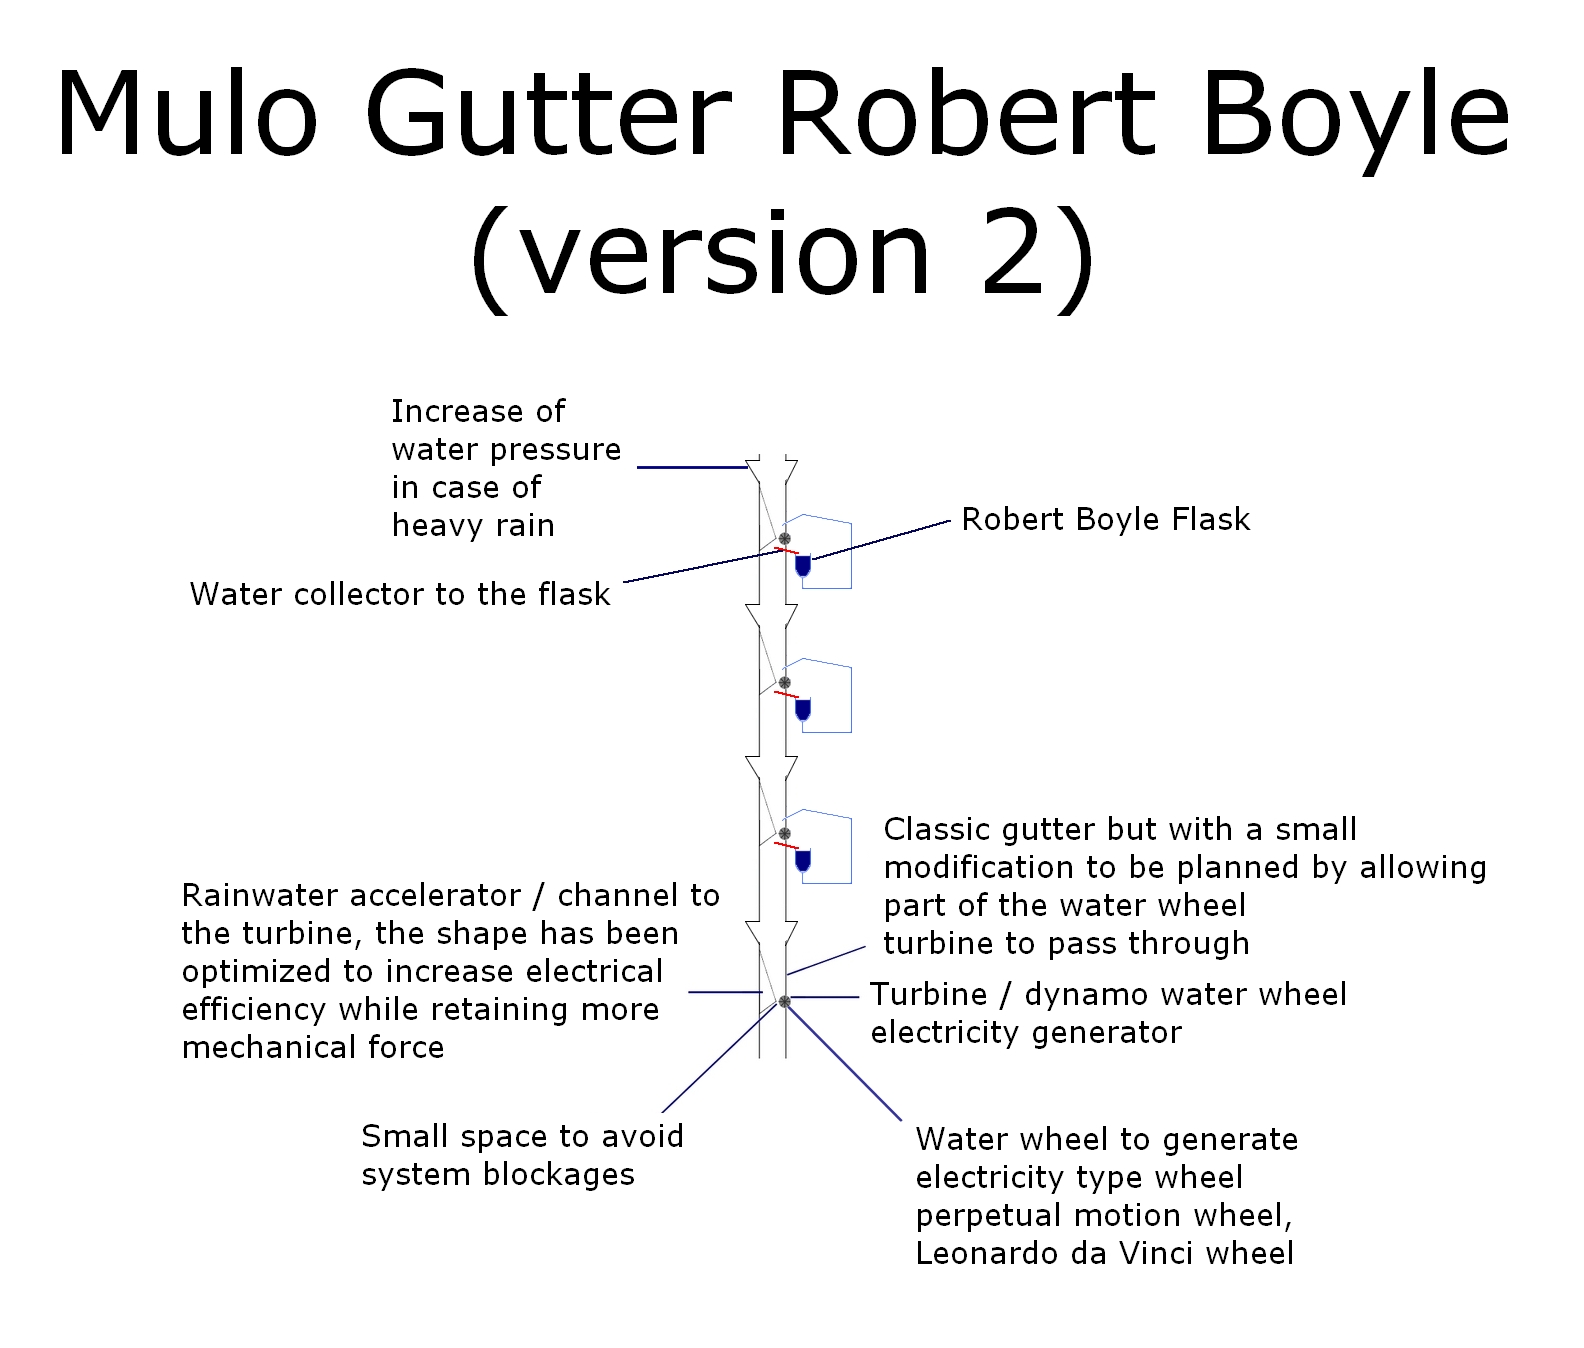 The Mulo Gutter Robert Boyle v2